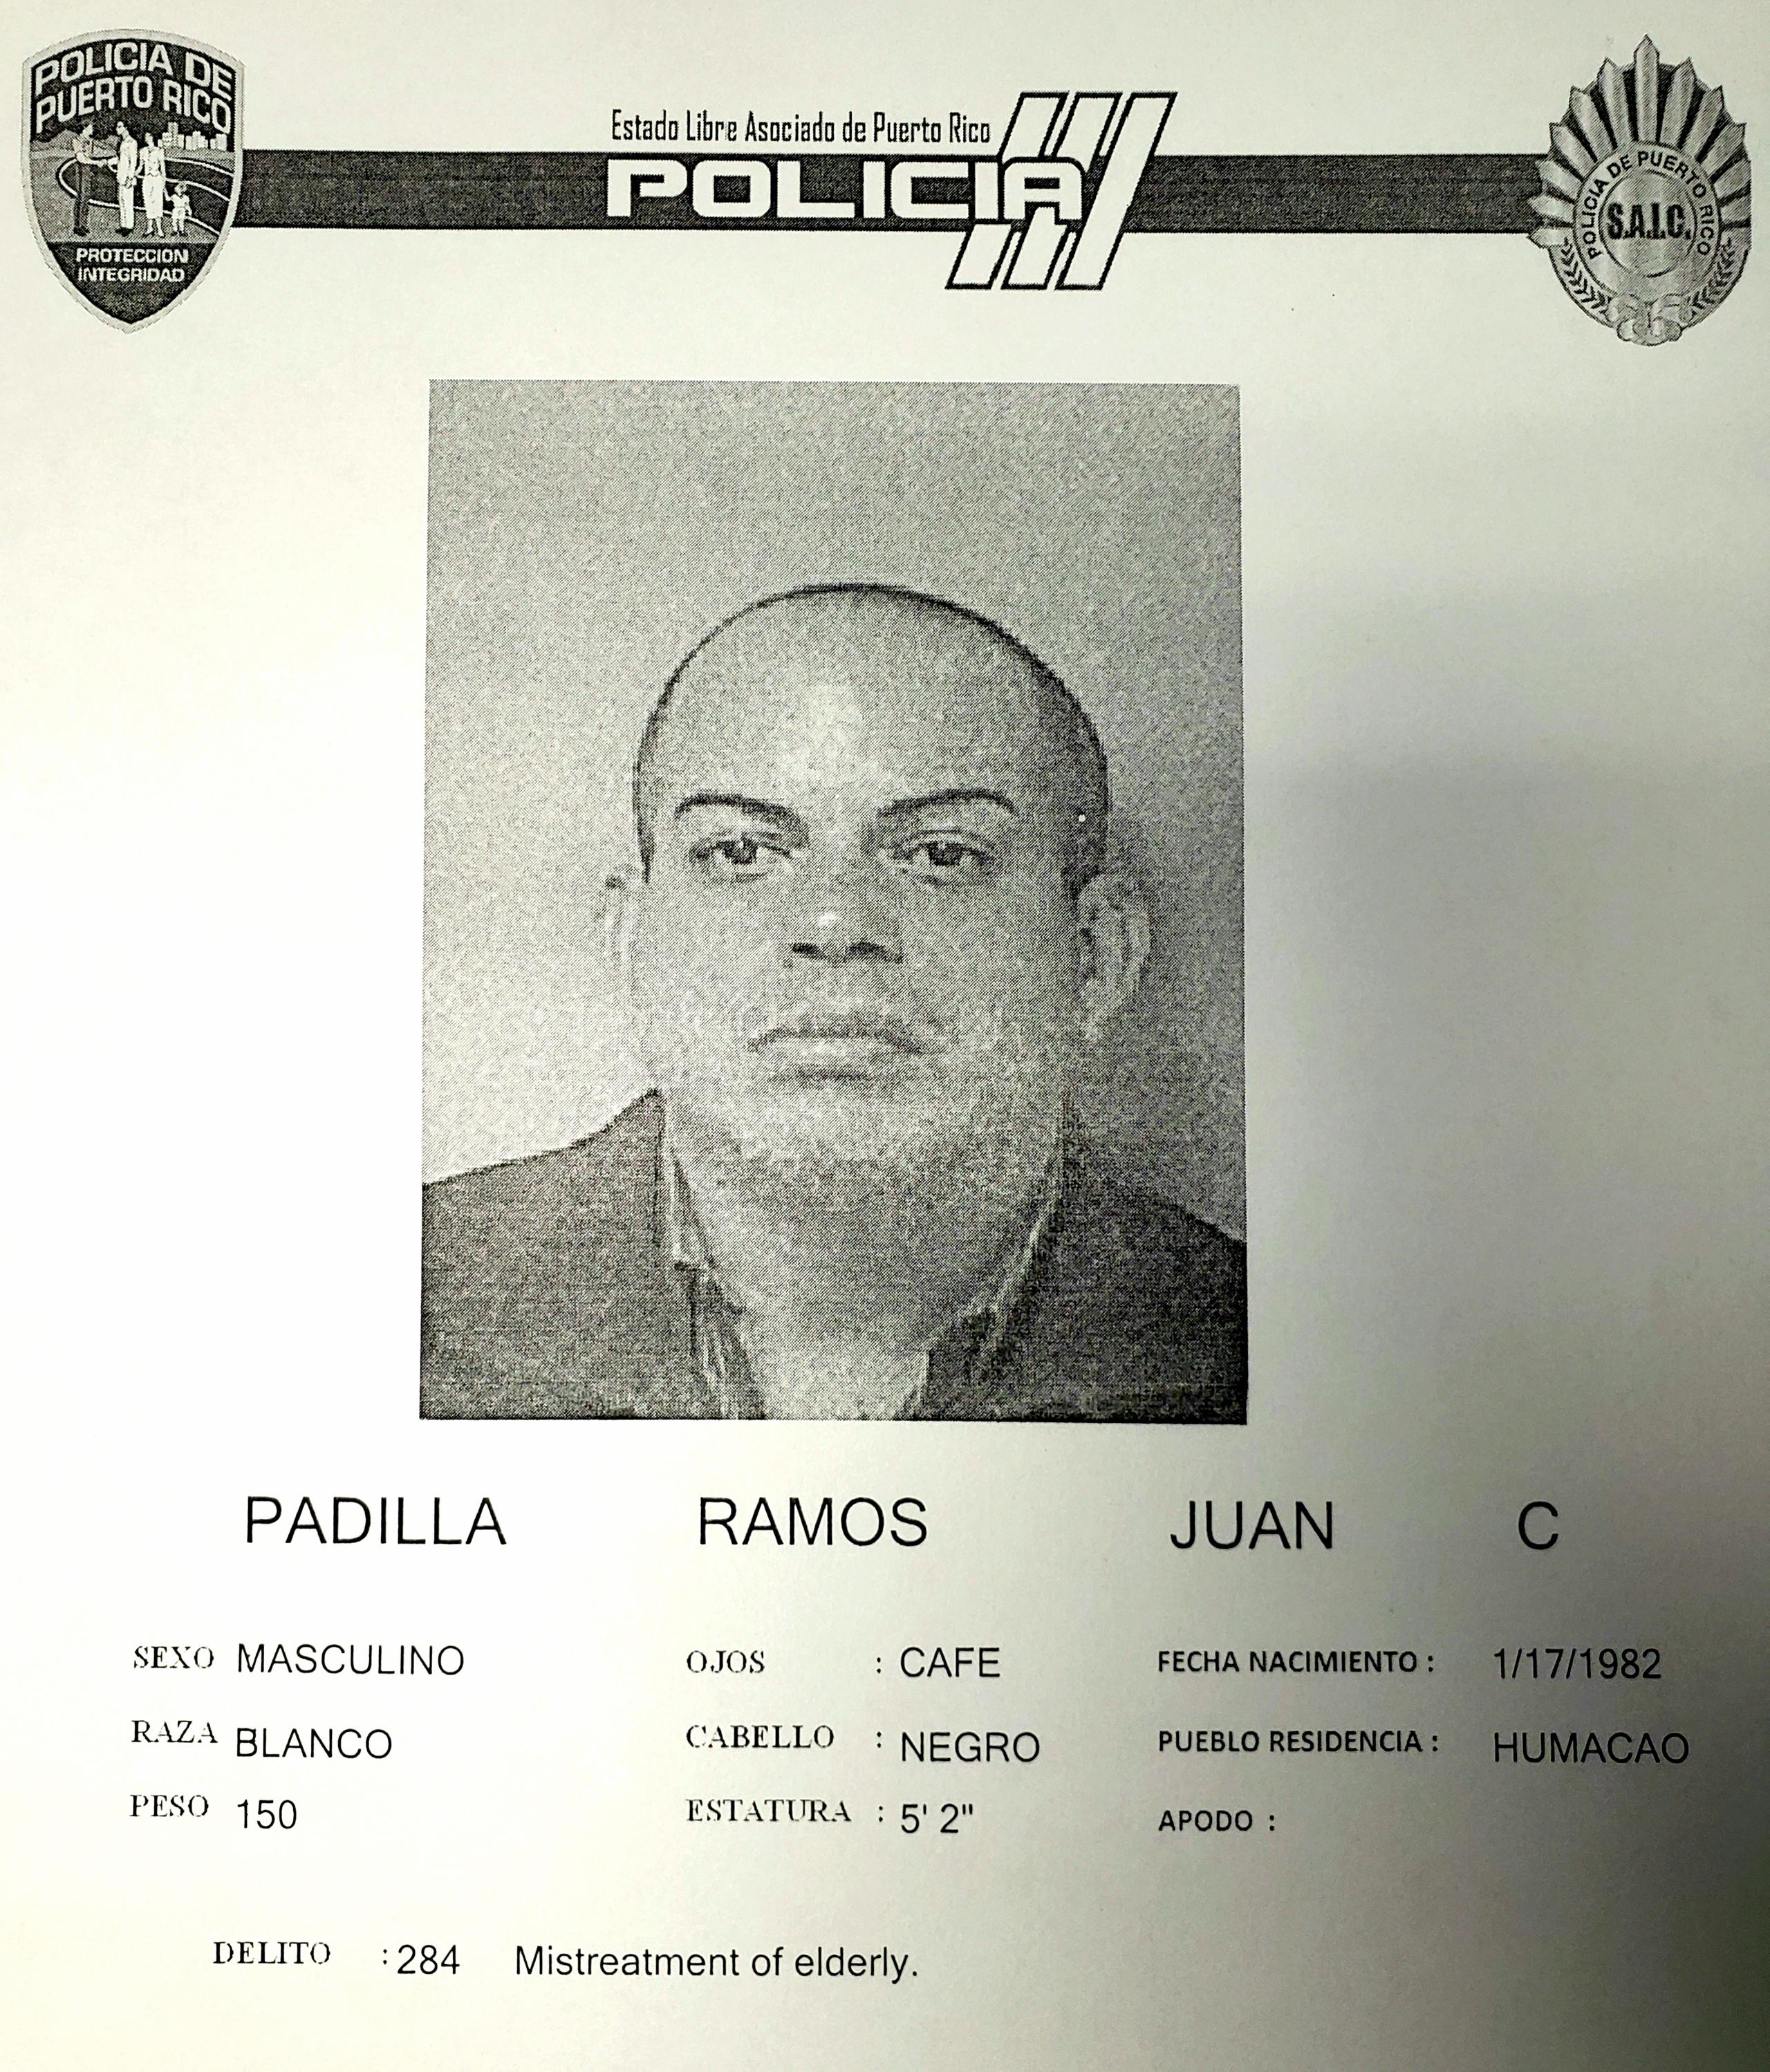 Ficha policíaca del imputado, Juan C. Padilla Ramos.